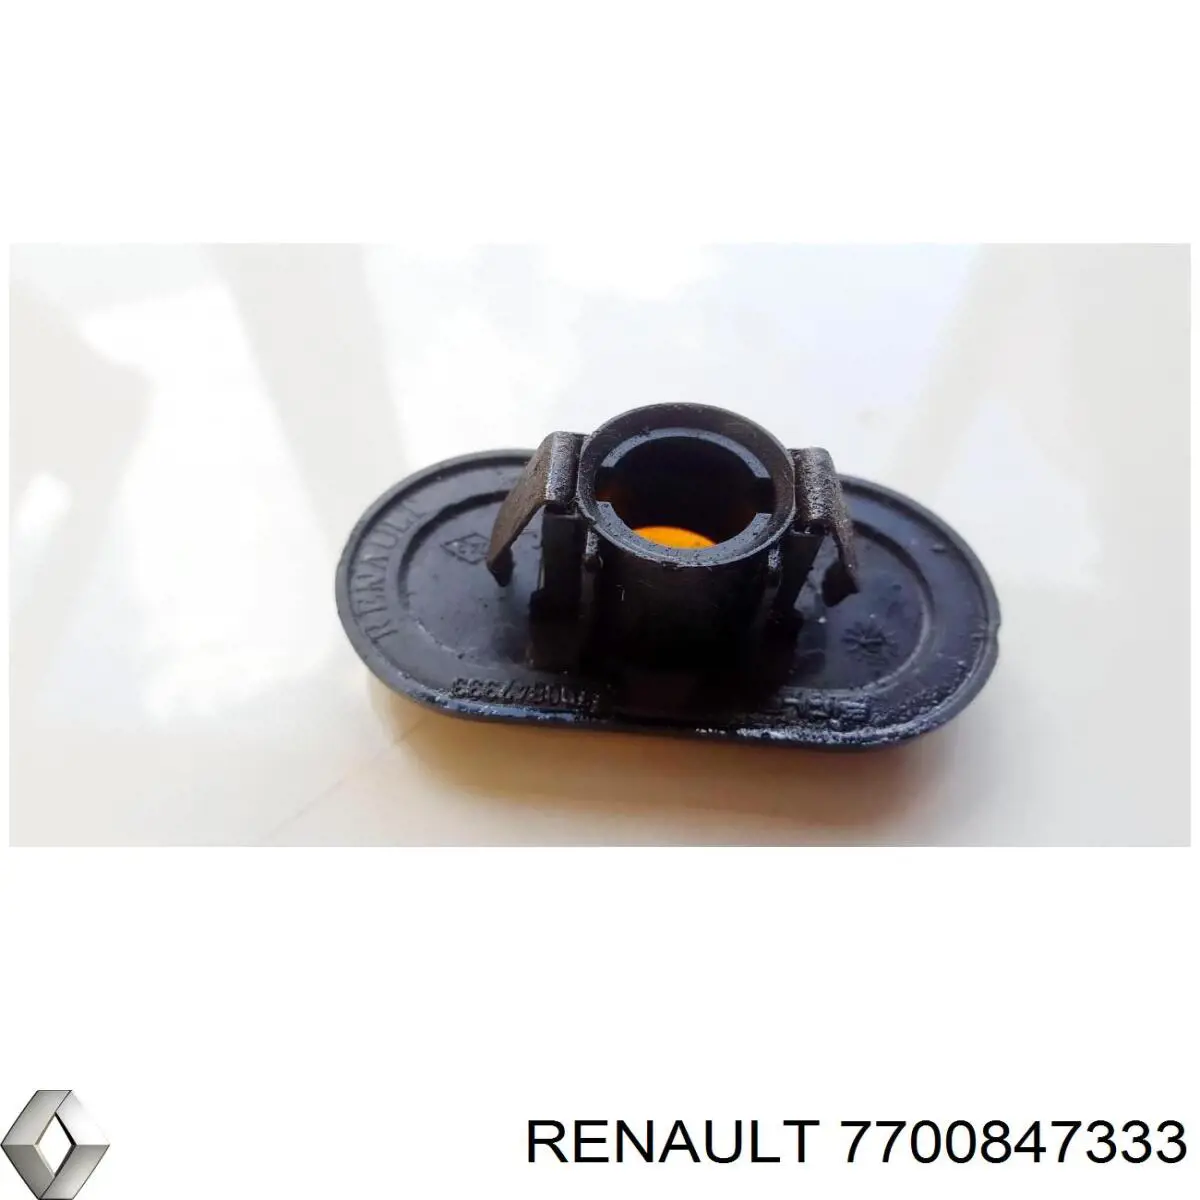 7700847333 Renault (RVI) luz intermitente guardabarros